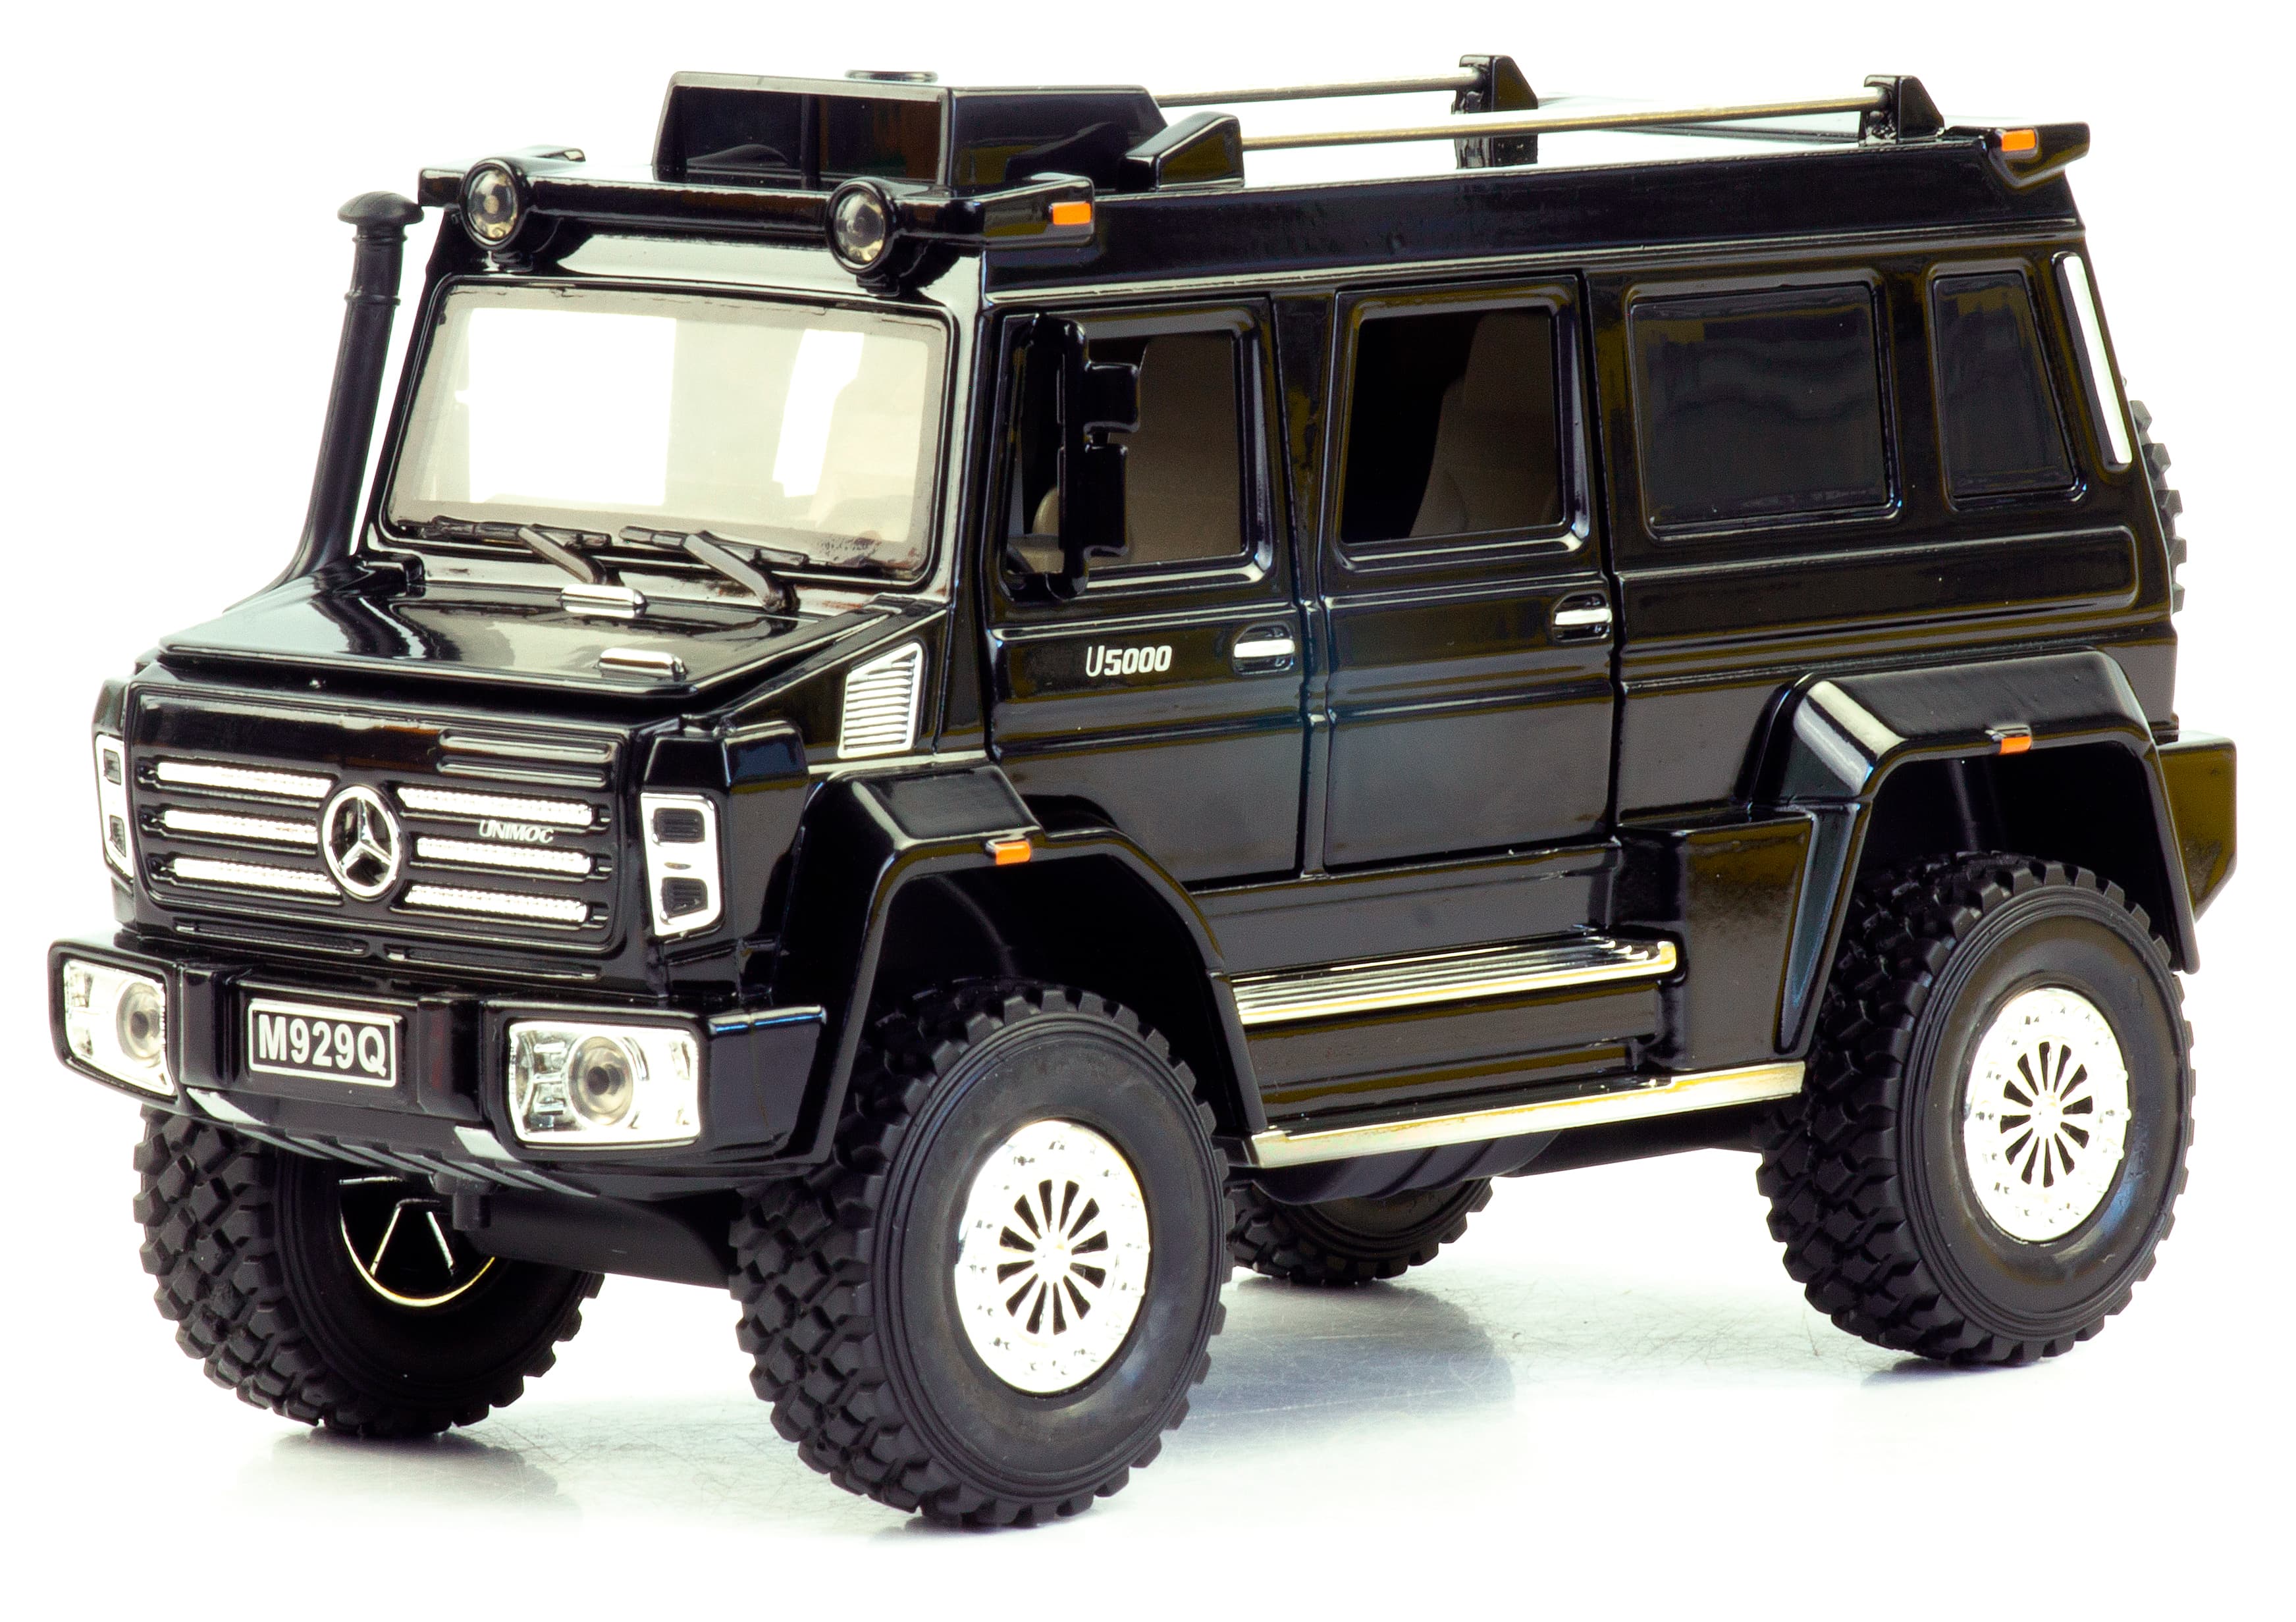 Металлическая машинка XLG 1:24 «Mercedes-Benz Unimog U 5000» 20,5 см. M929Q инерционная, свет, звук / Микс